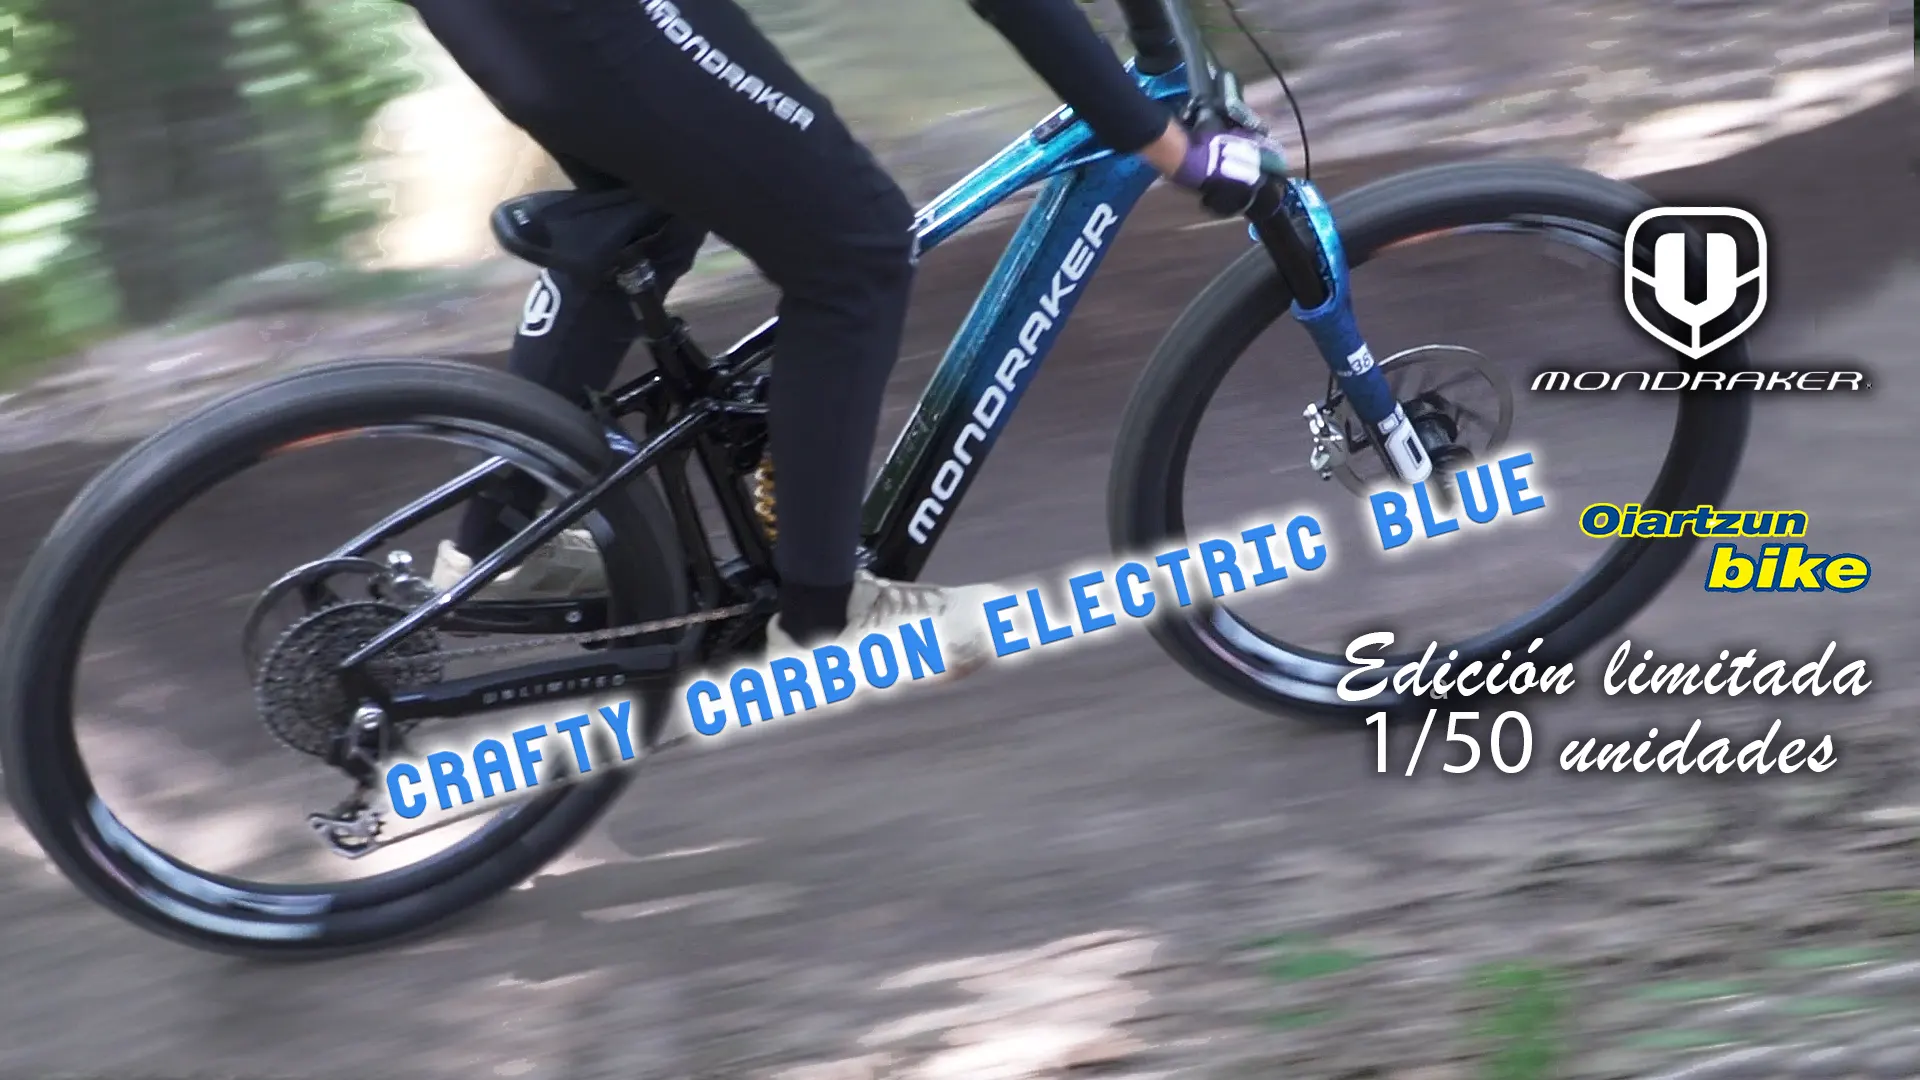 Probamos la n1 de la edición limitada de la Crafty Carbon Electric Blue de Mondraker